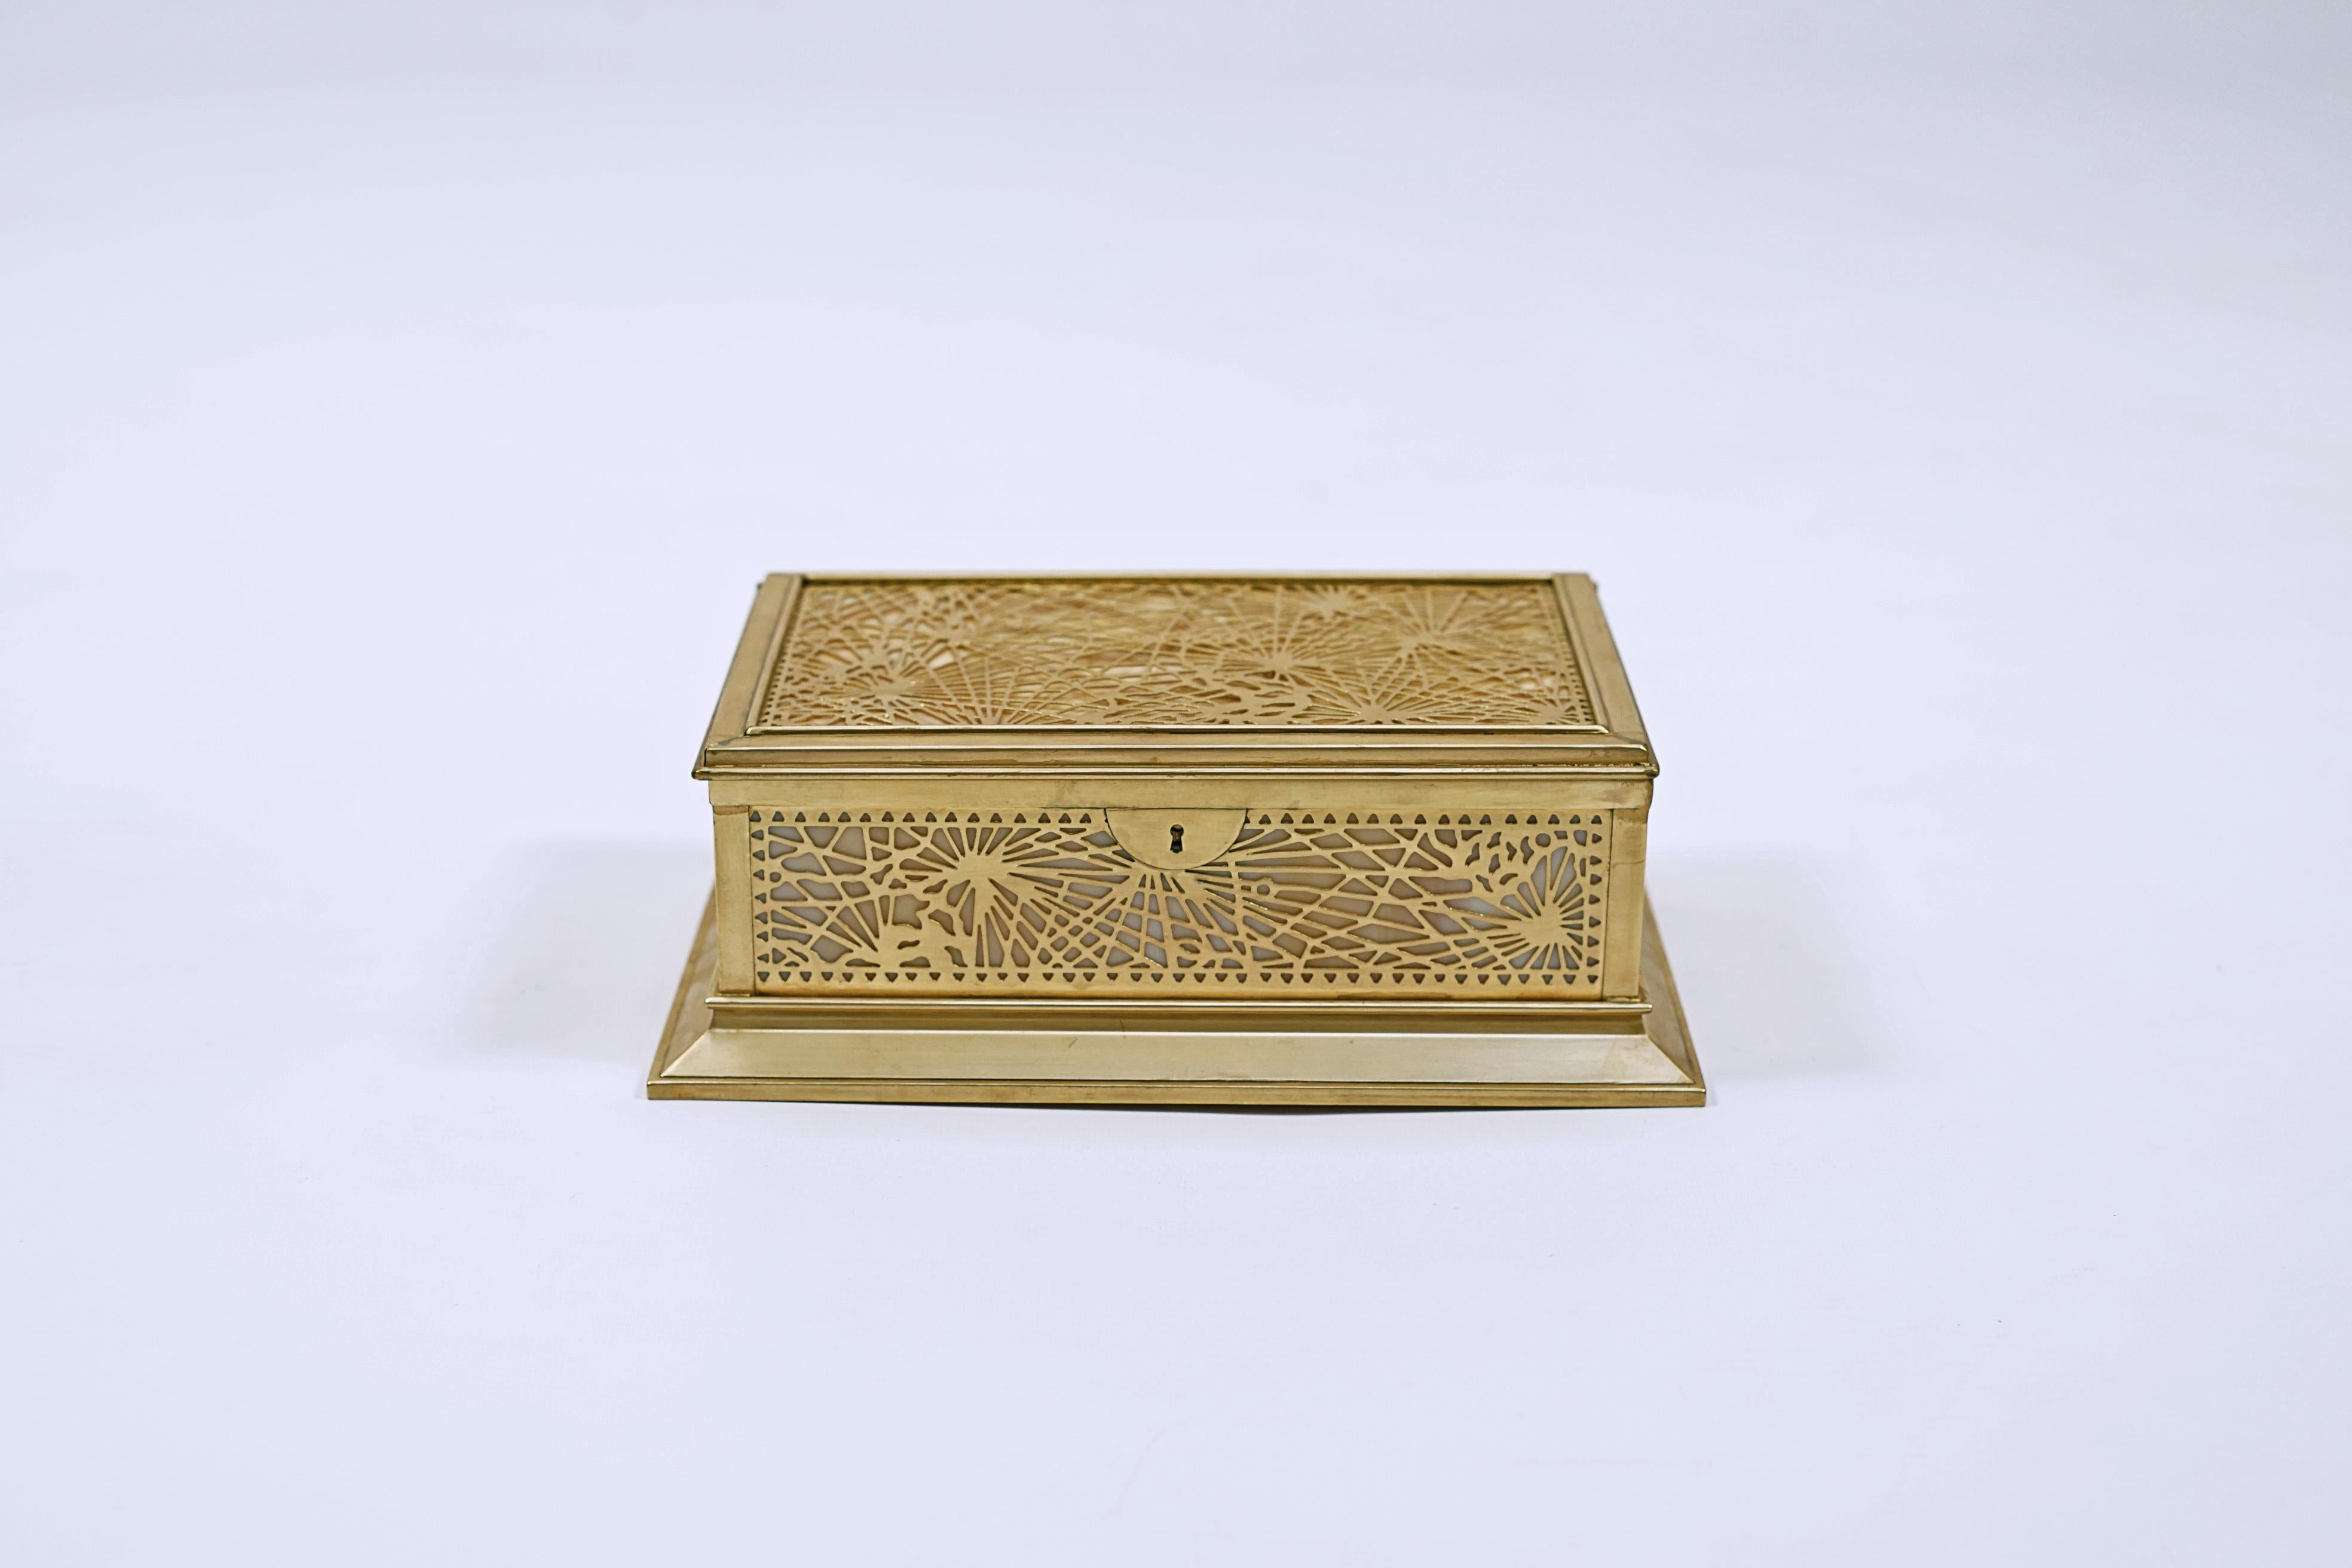 Bronzedose mit weißem und orangefarbenem Glas, Modell Pine Needle, hergestellt von TIFFANY & Co, (1837 bis heute).

Signiert TIFFANY STUDIOS, NEW YORK, 823.

USA, UM 1910.